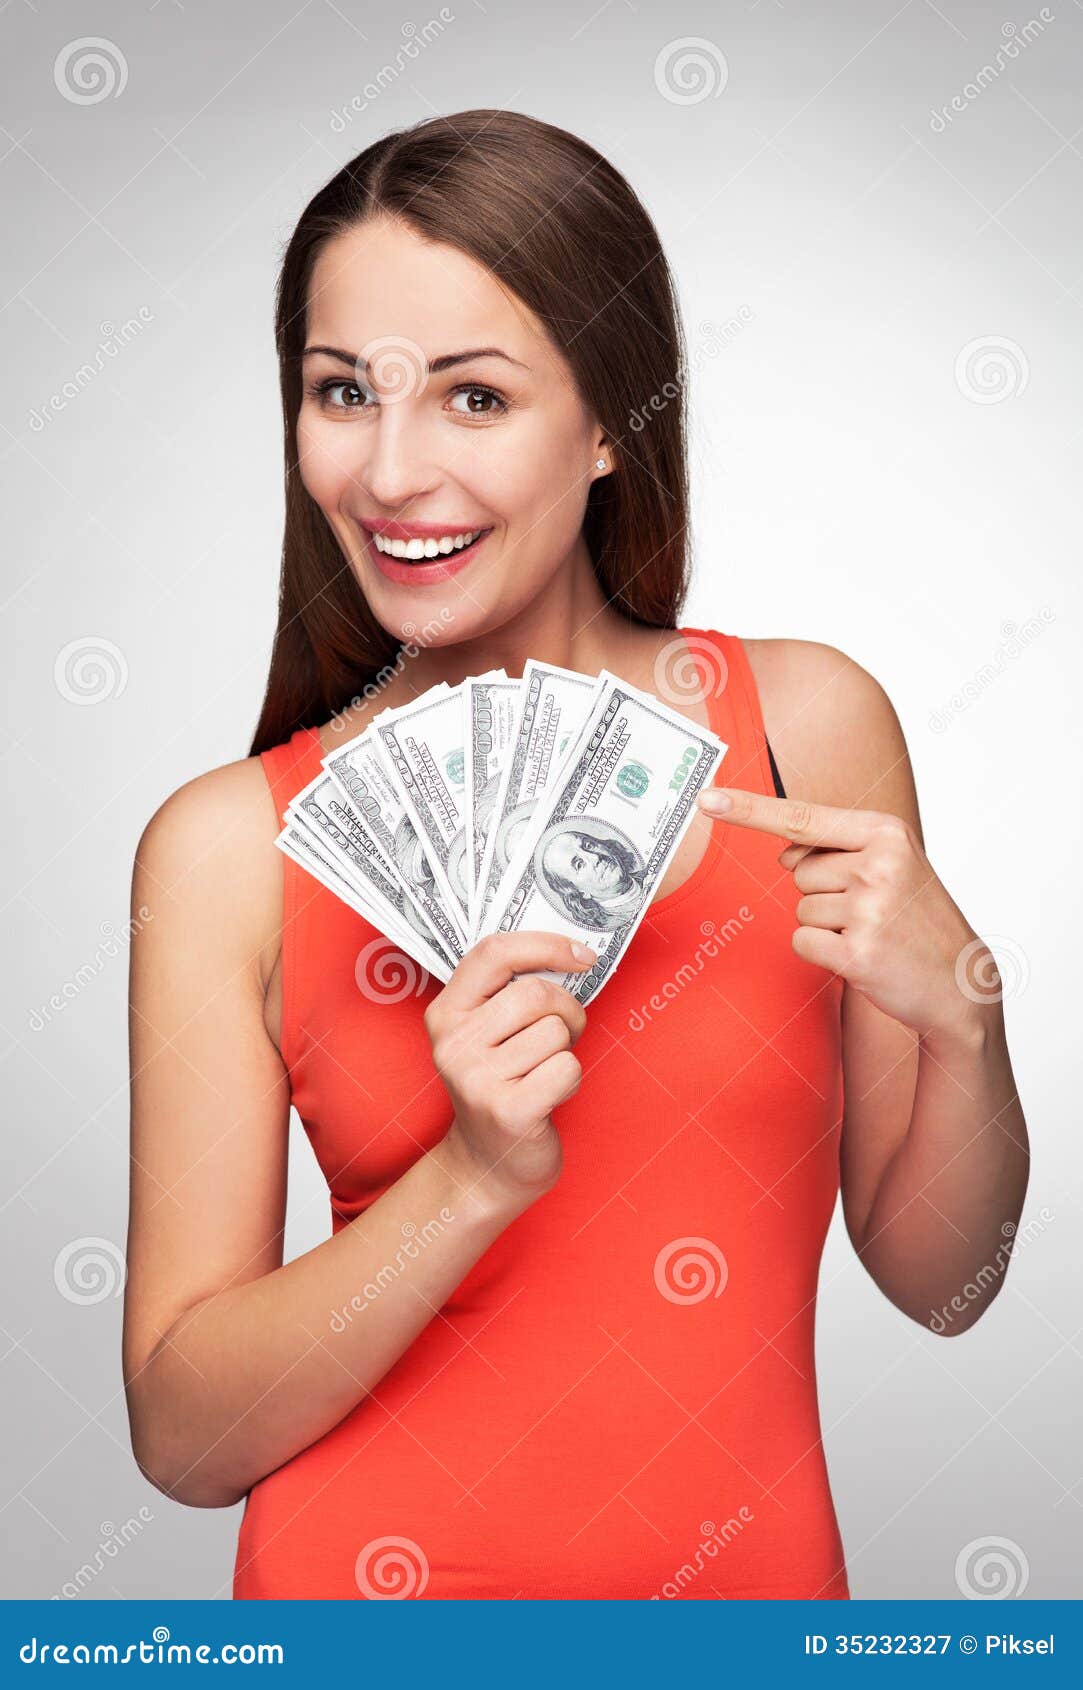 5000 рублей девушка. Девушка с деньгами. Девушка держит деньги в руках. Девушка с рублями. Женщина с рублями в руках.